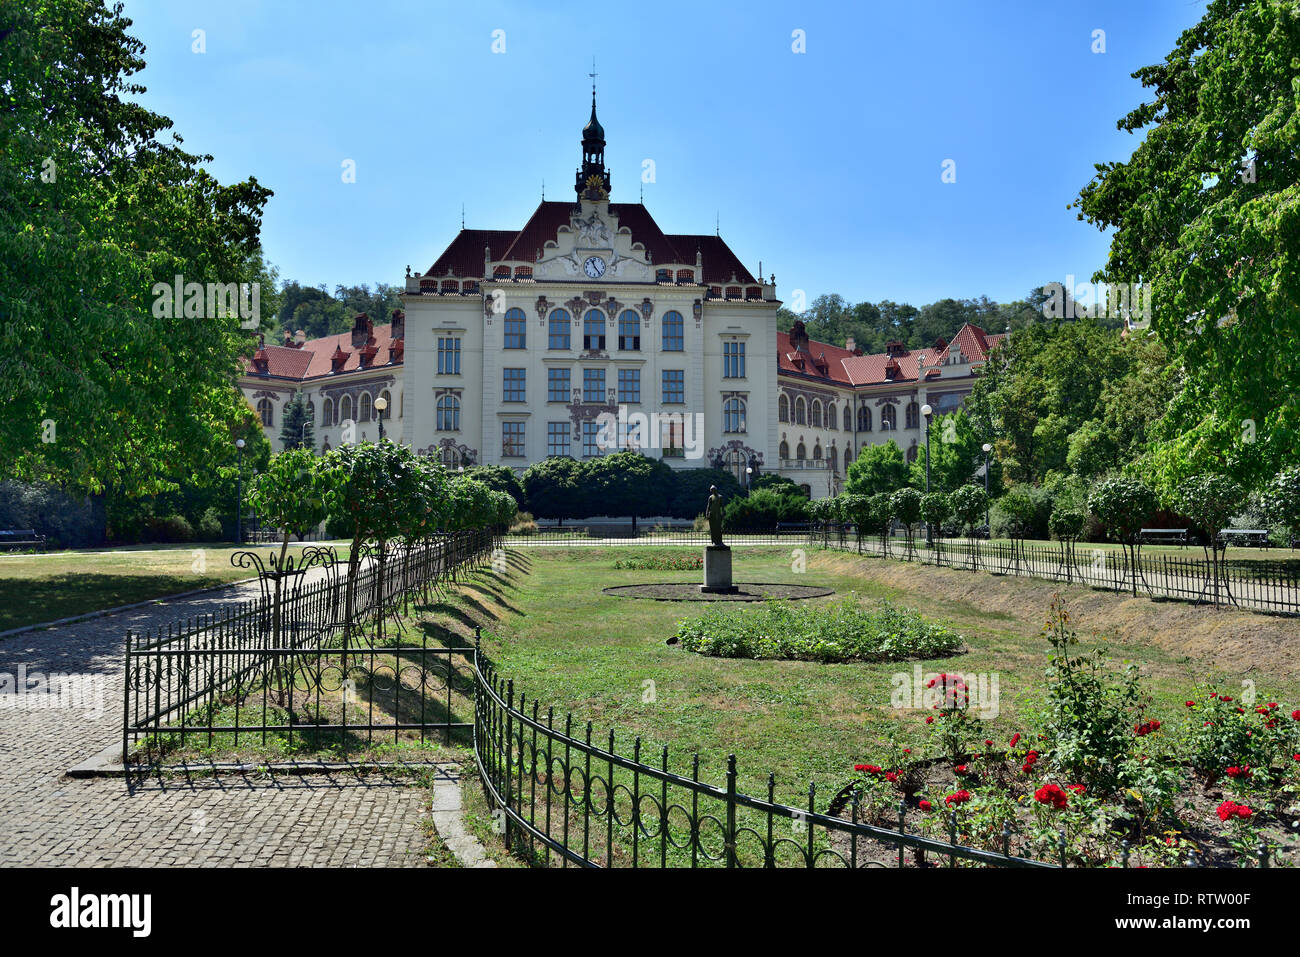 Prague garden and front of primary school (Základní škola) building in Karlín region, Czech Republic Stock Photo